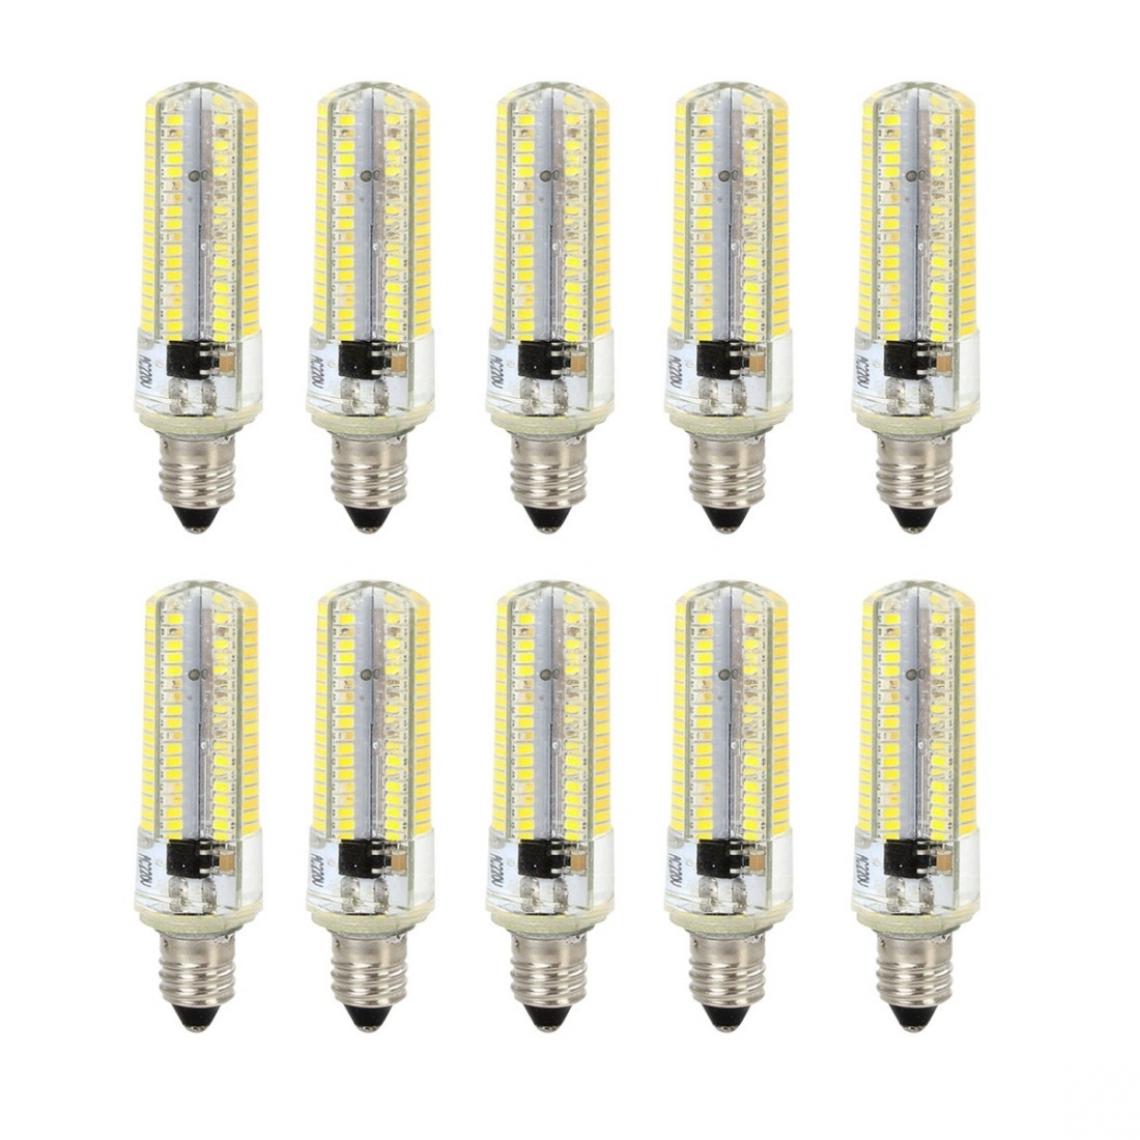 Wewoo - 10 PCS E11 7W 152 LED 3014 SMD 600-700 LM ampoules de maïs en silicone à intensité variable et blanc froidCA 220V - Ampoules LED